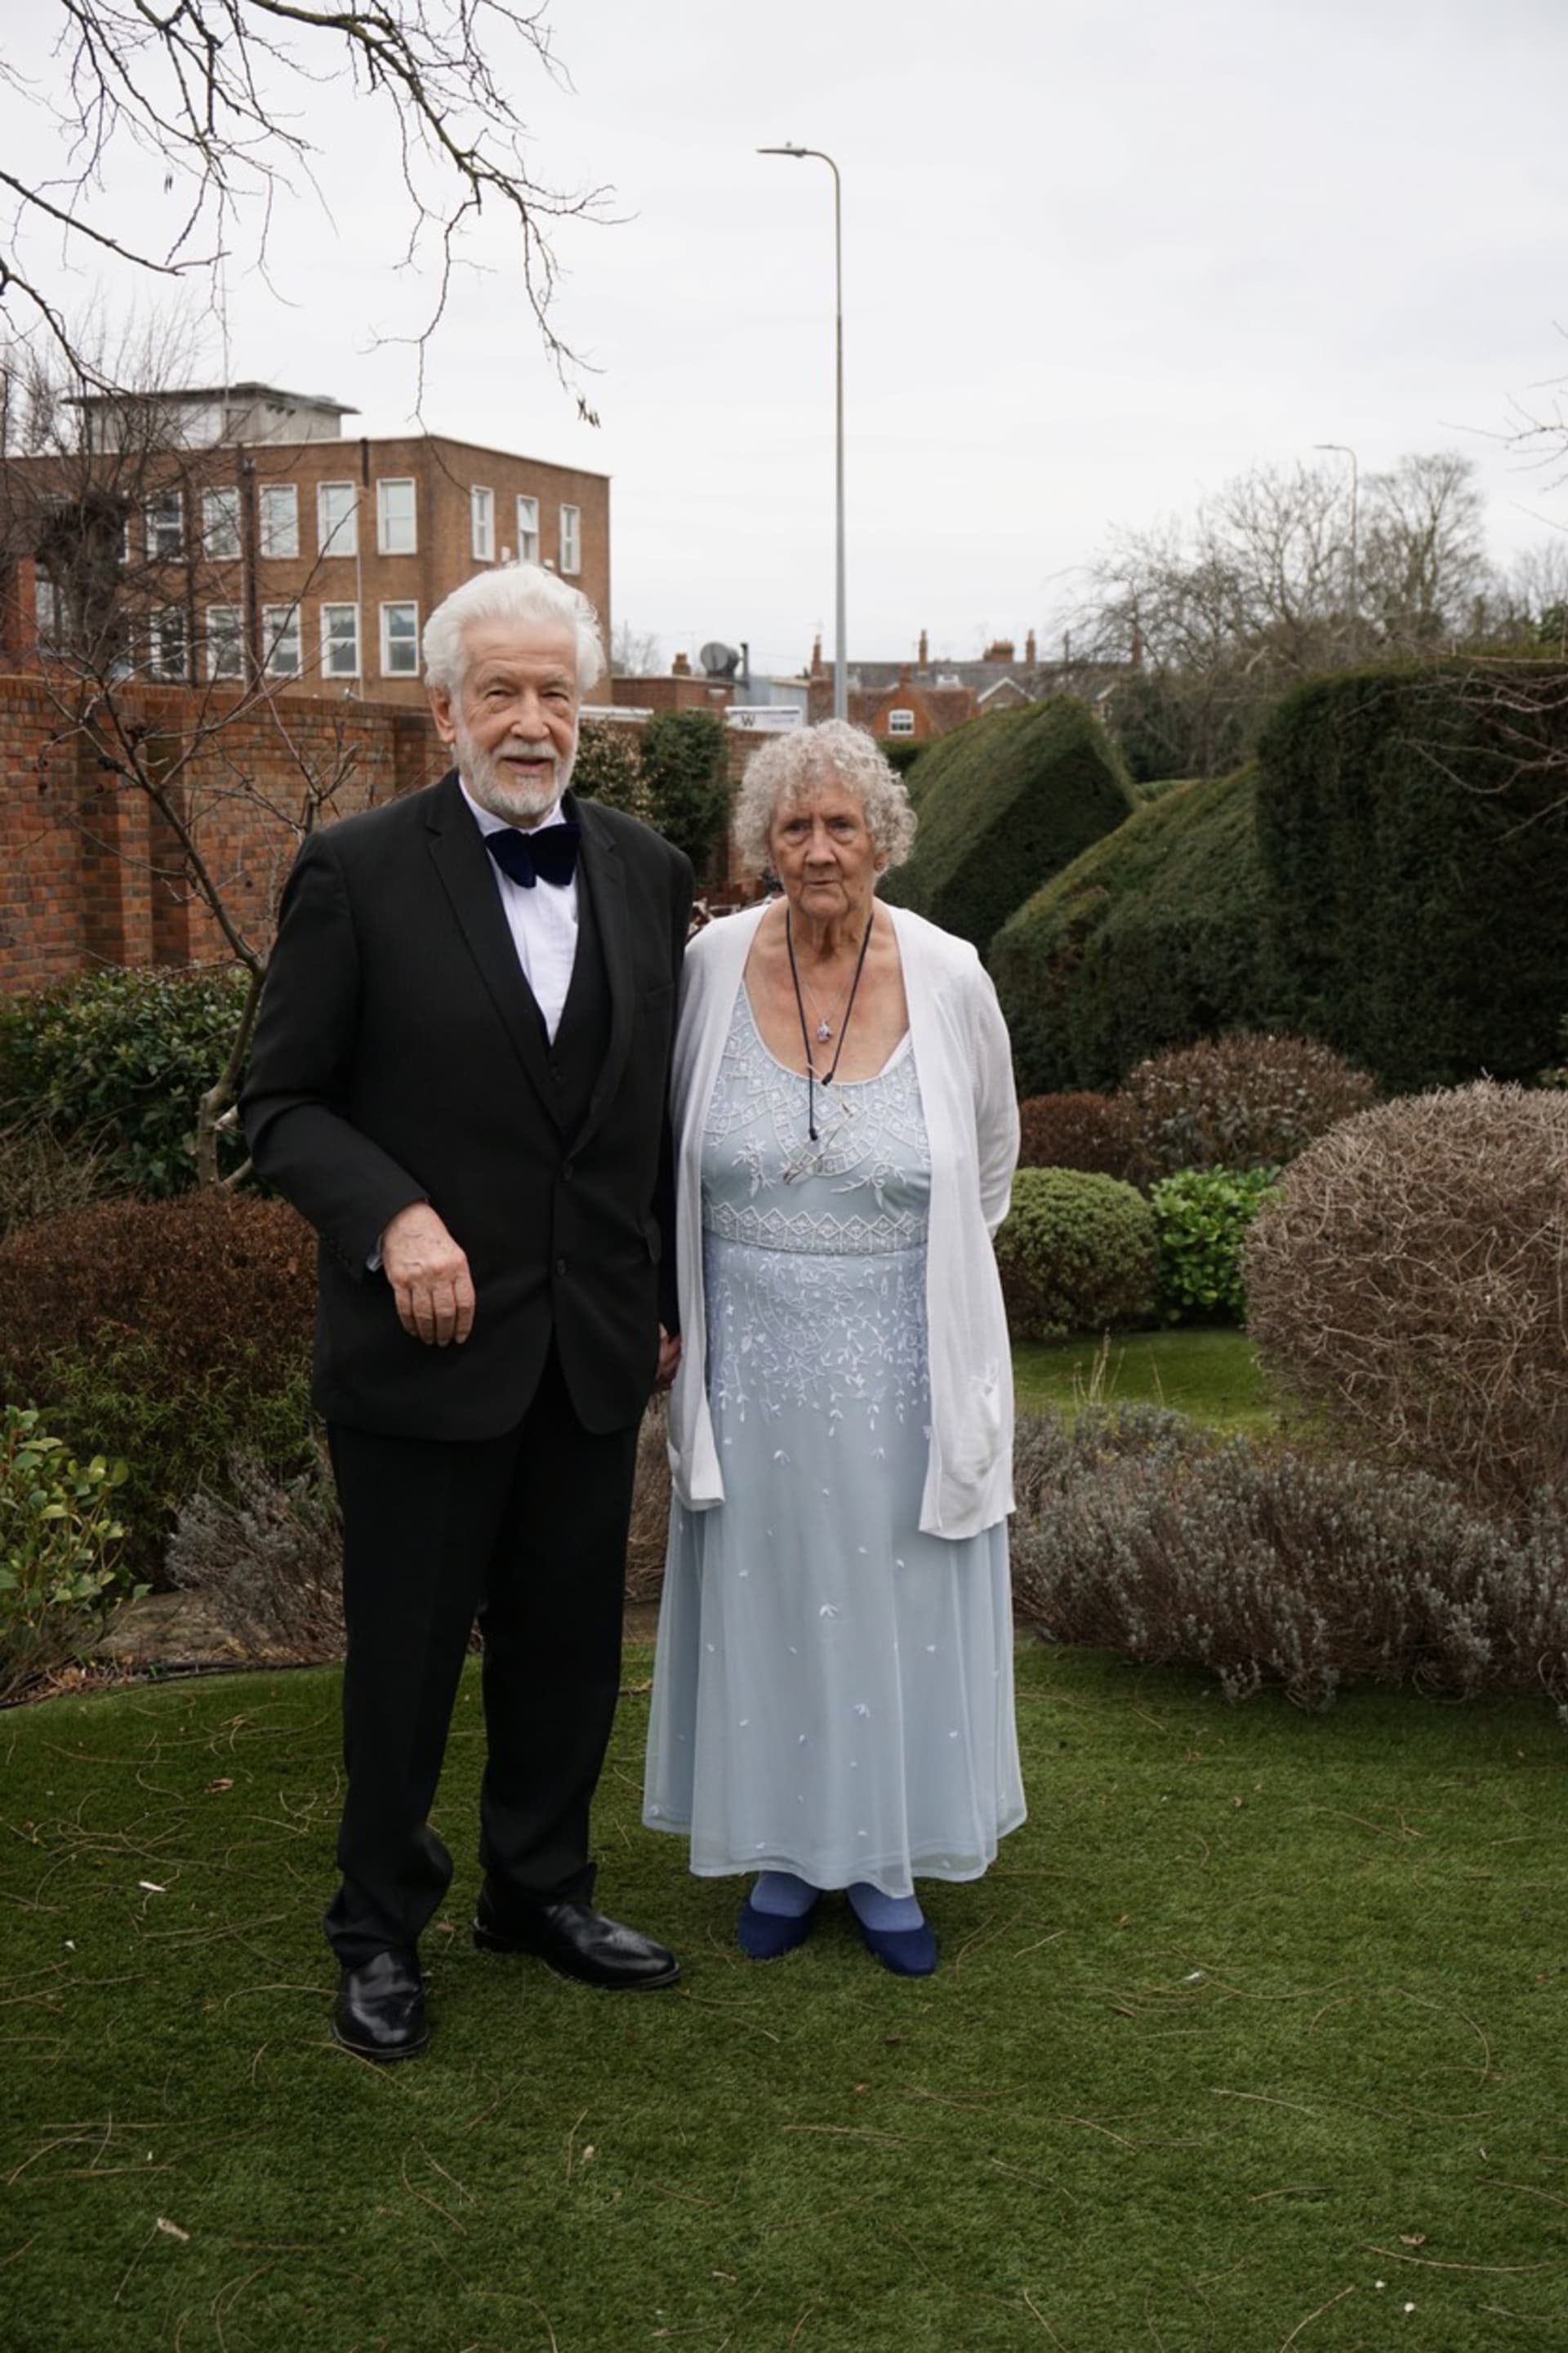 Rodiče Jeanette Steerové zakázali svatbu s Besottedem Lenem Allbrightonem. Nakonec se vzali po 60 letech.